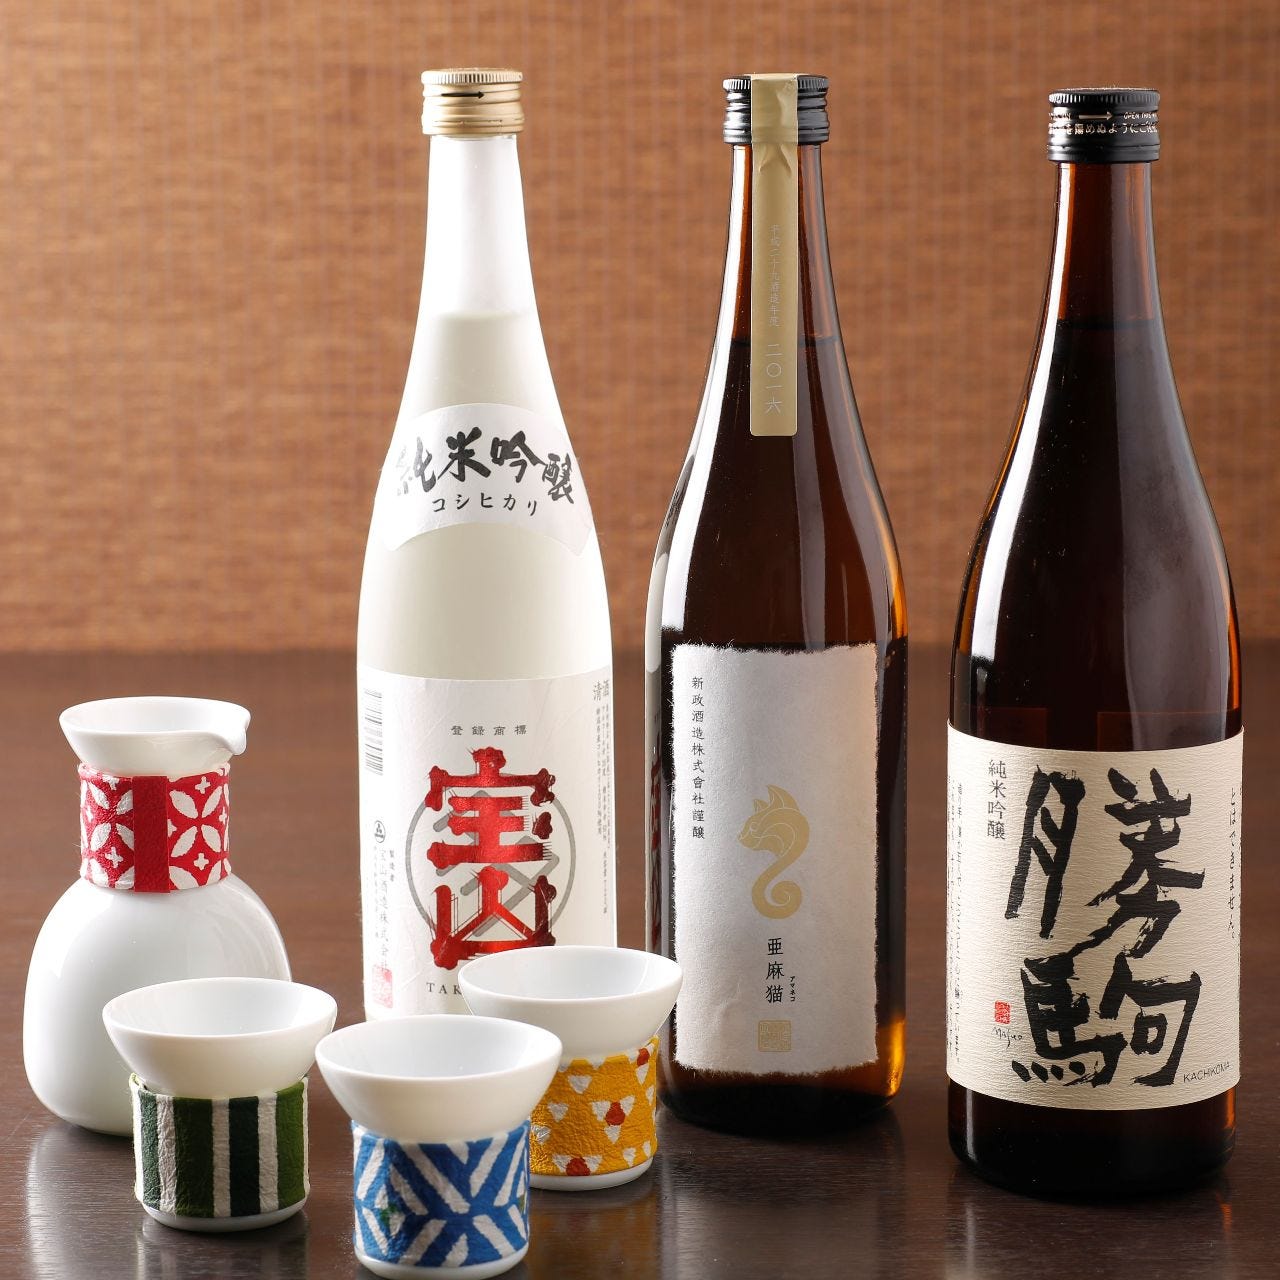 日本橋室町で美味しい日本酒を
新しい日本酒との出会いを